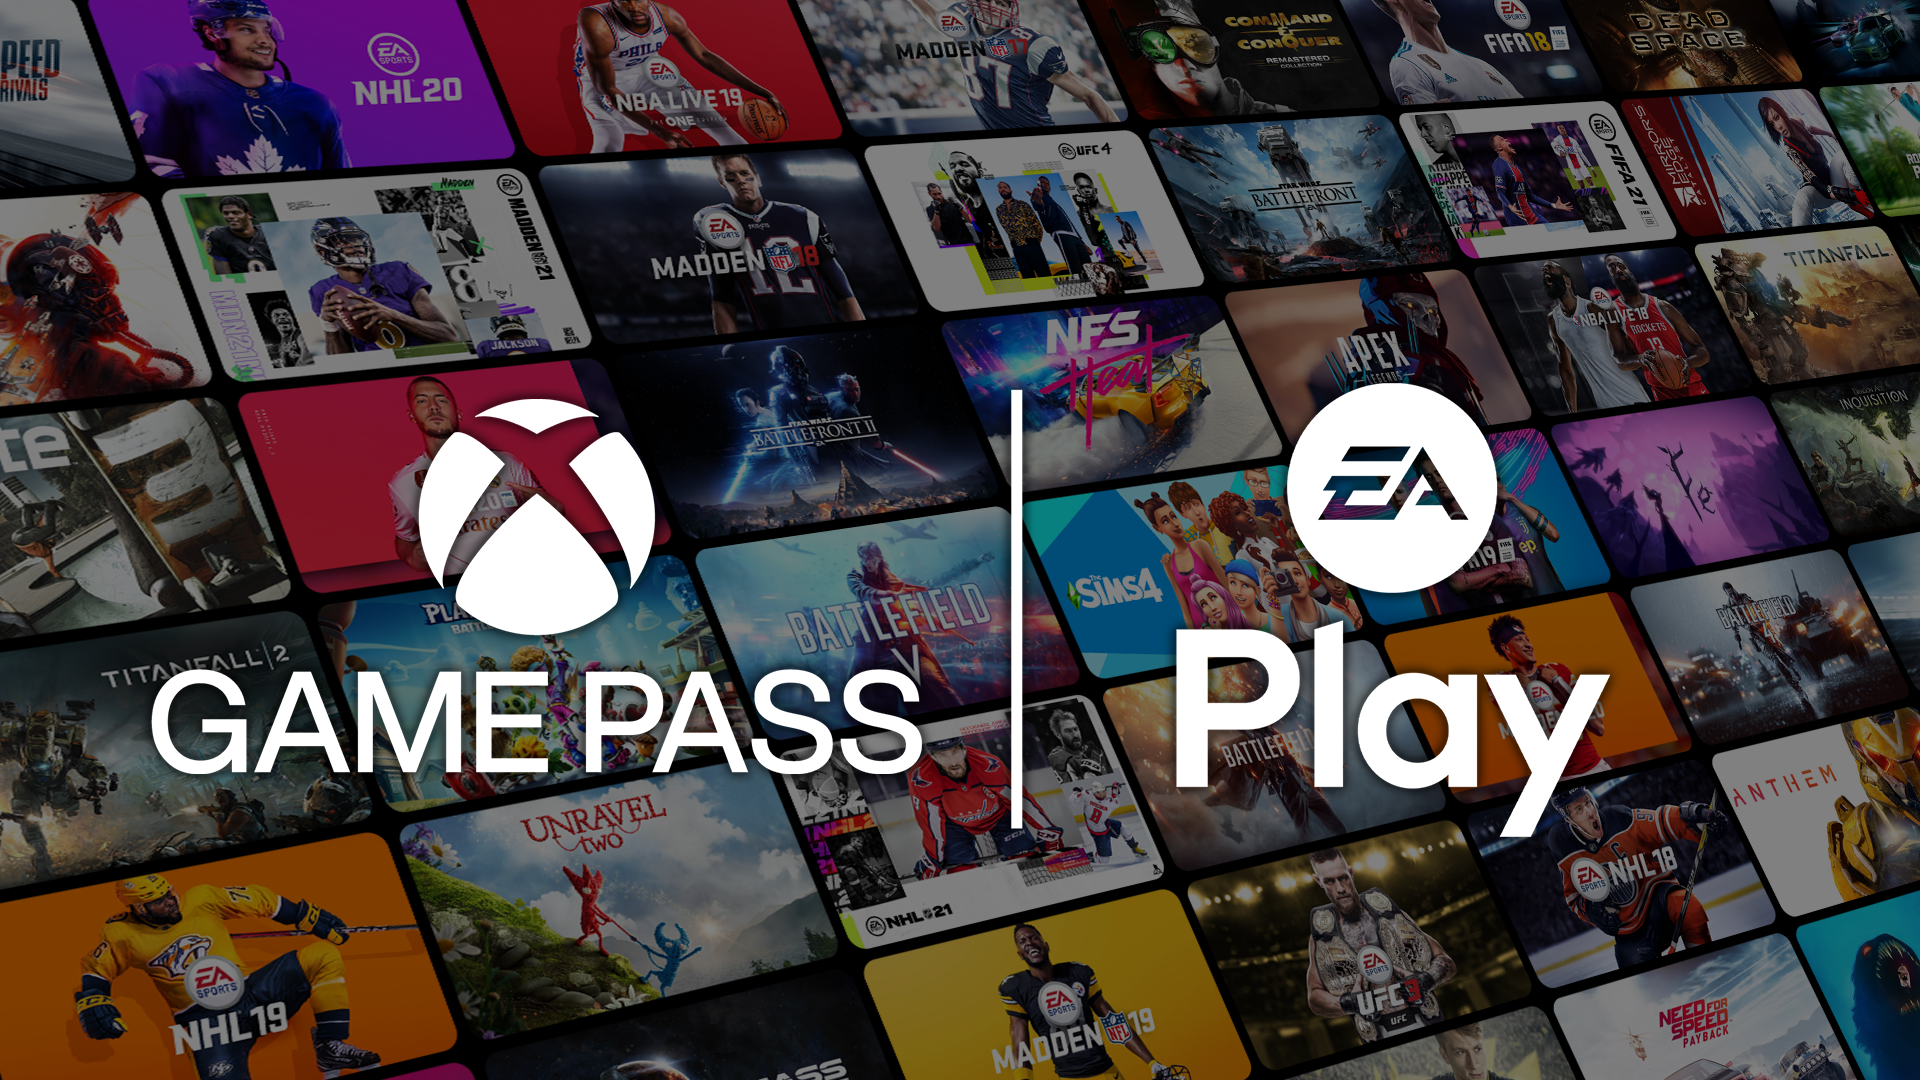 Součástí elektronické licence Xbox Game Pass Ultimate je také členství EA Play, se kterým získáte exkluzivní výzvy a odměny ve hrách, speciální prémiový obsah a DLC rozšíření i samotné hry a série od Electronic Arts.